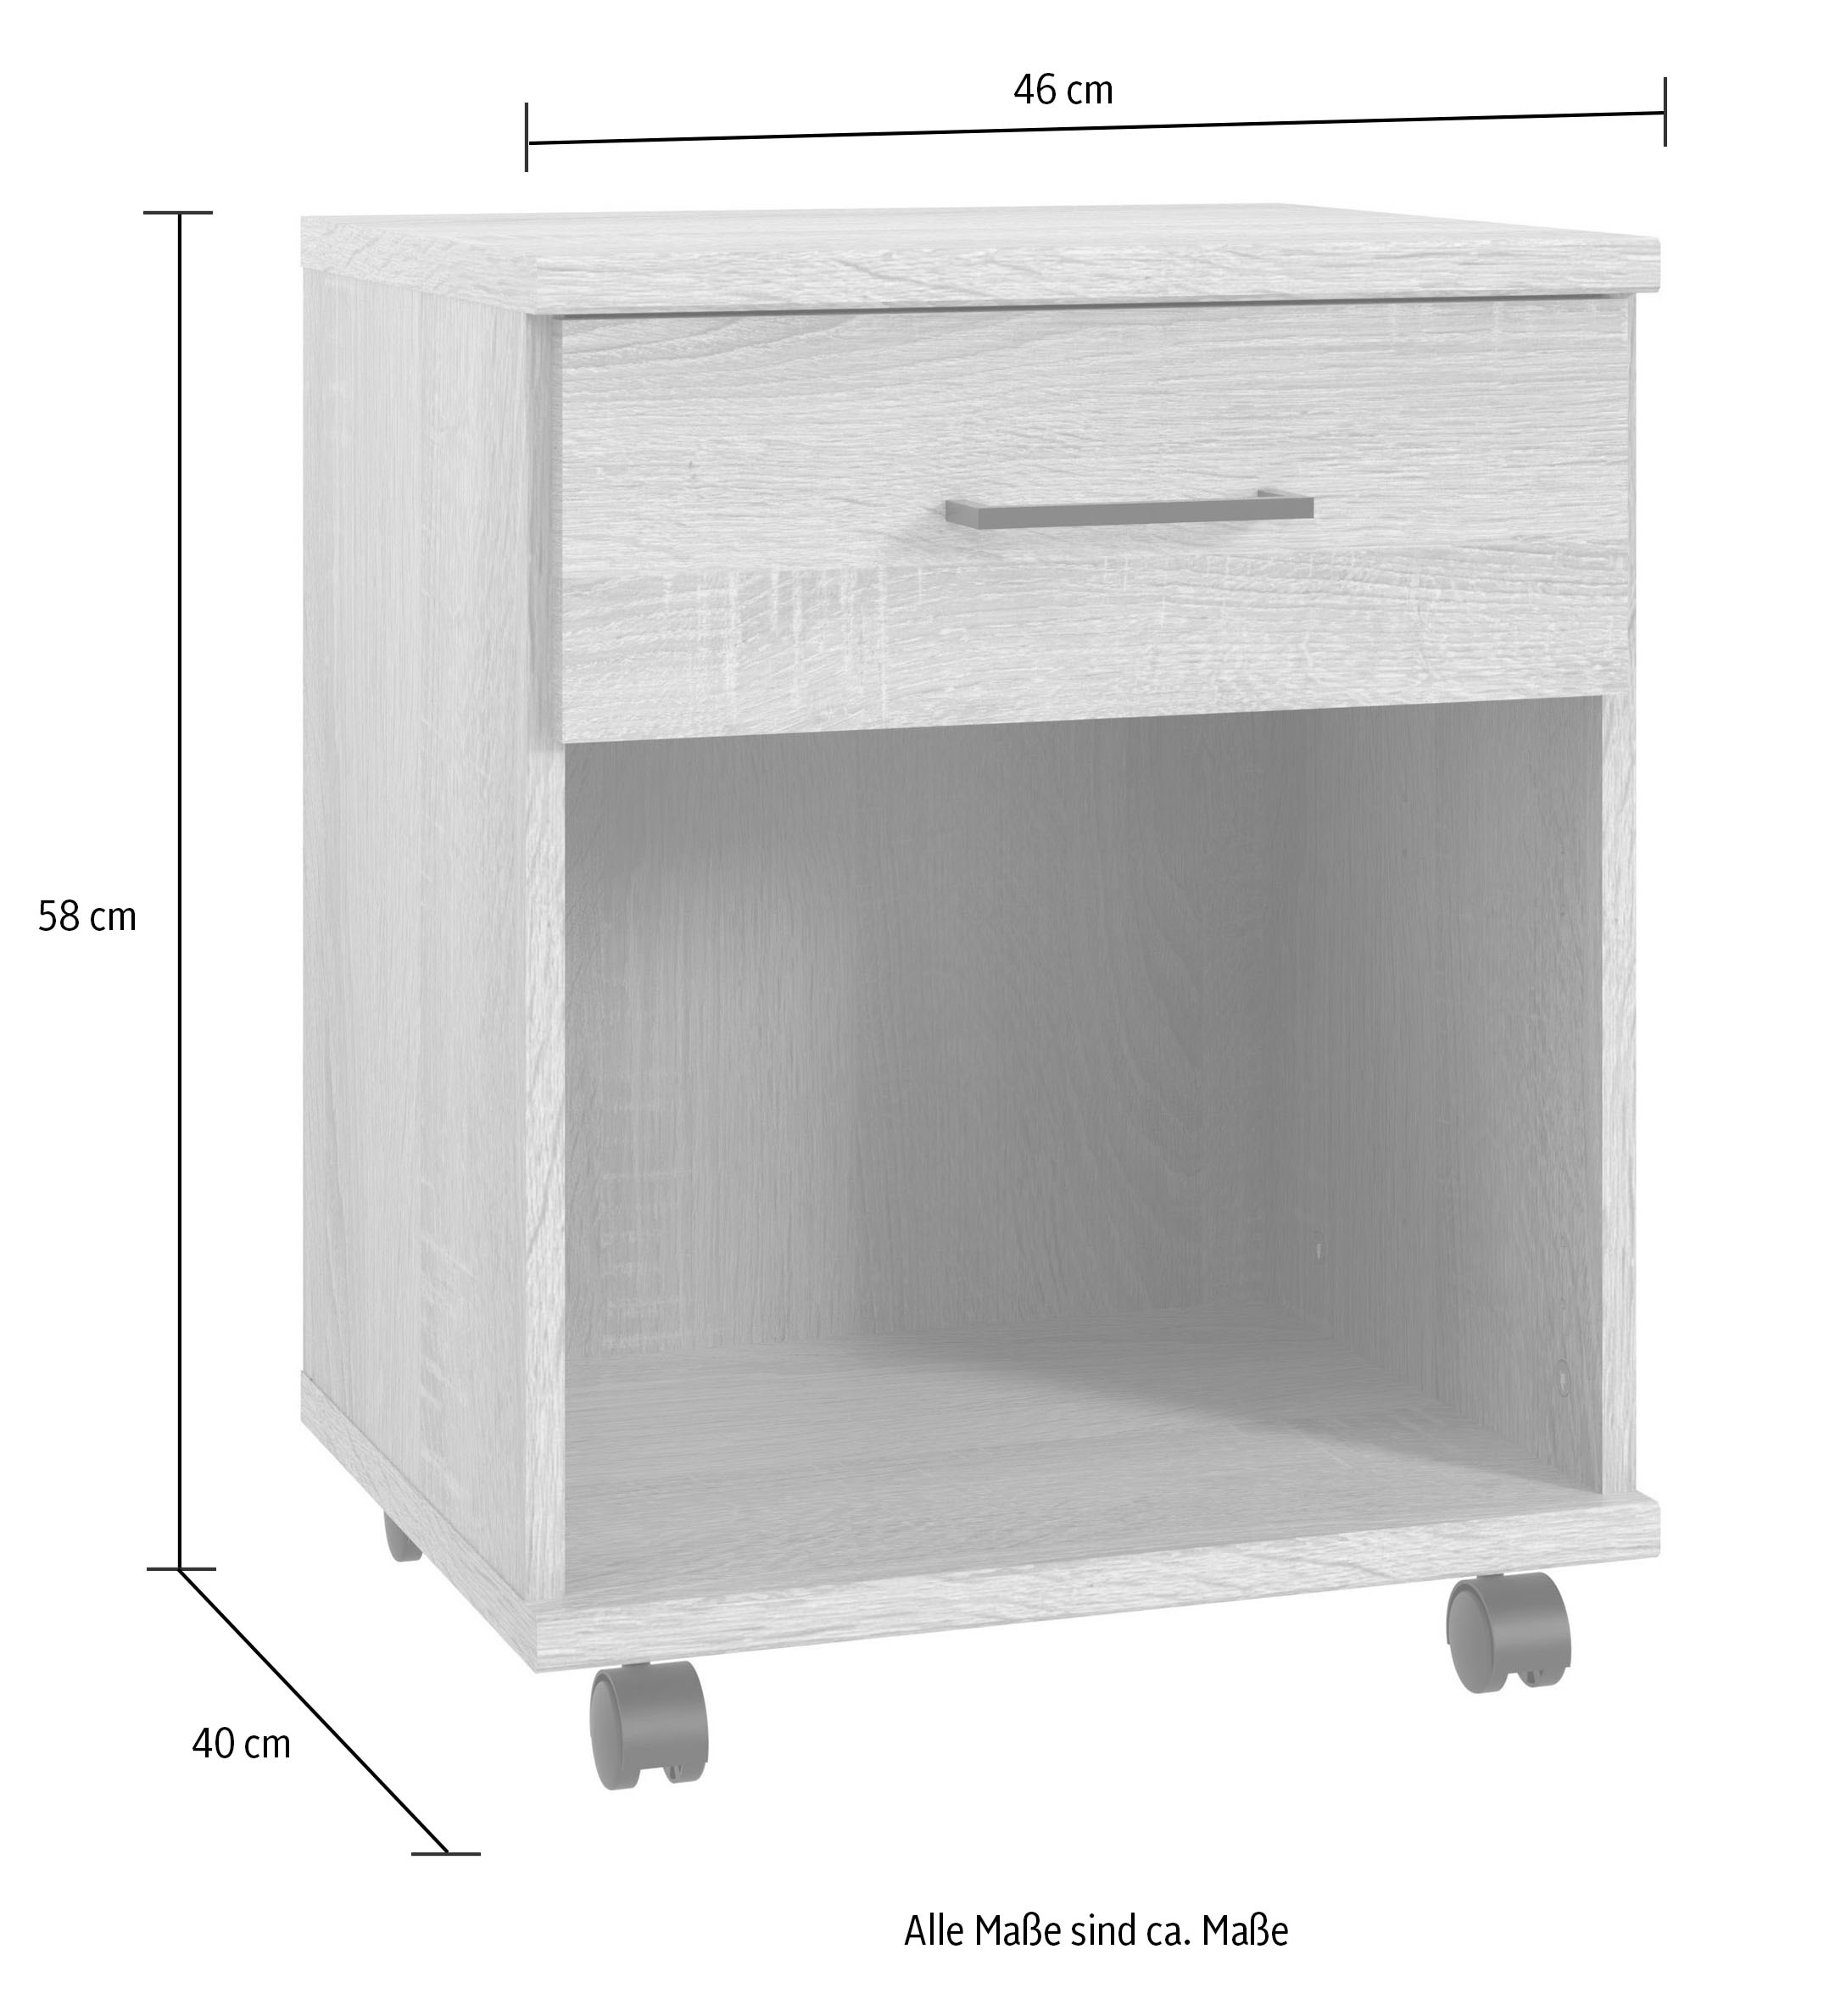 Wimex Rollcontainer »Home Desk«, mit 1 Schublade, 46cm breit, 58cm hoch